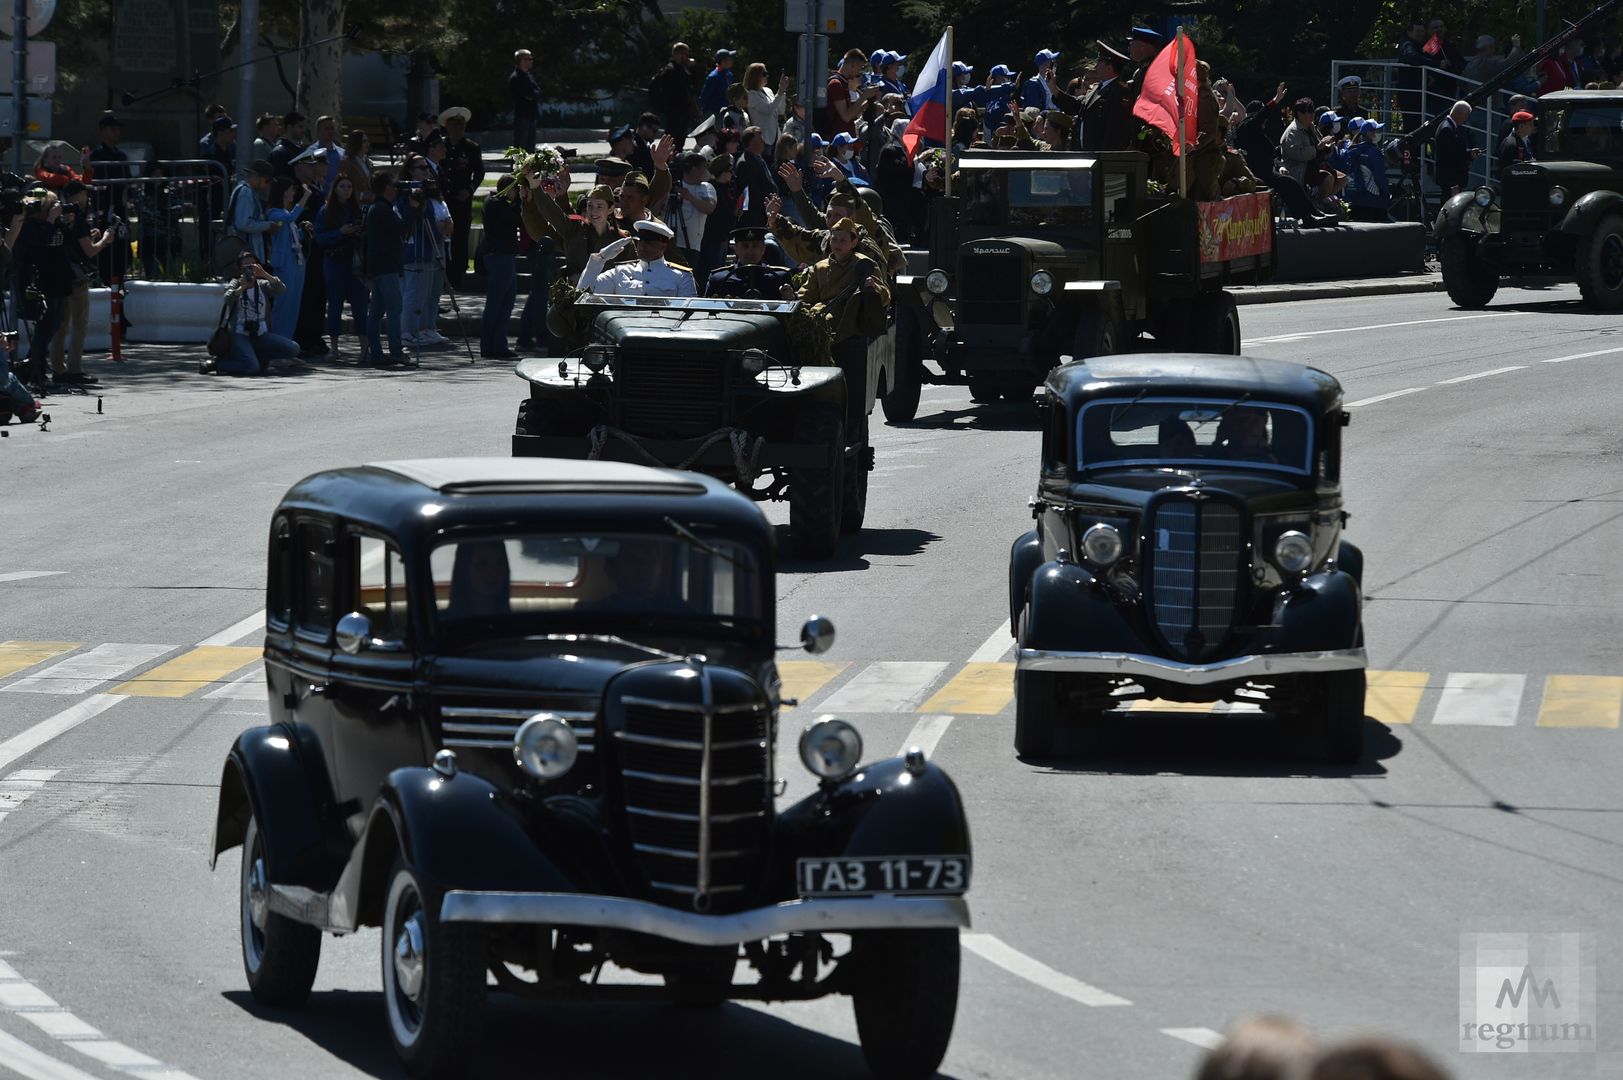 Парад Победы в Севастополе